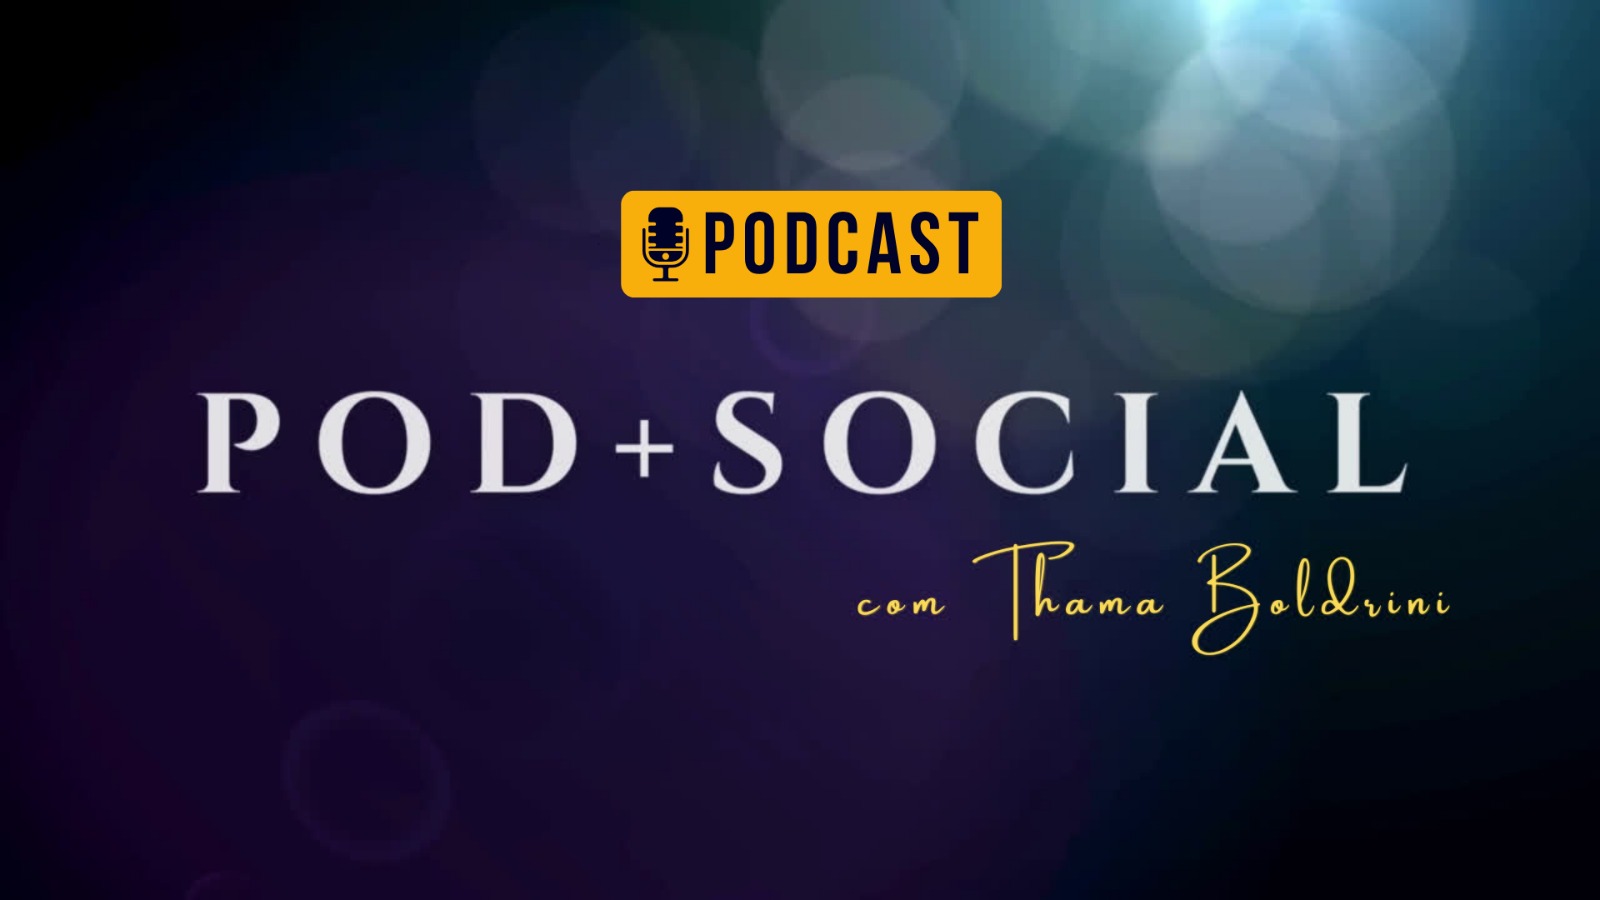 Podcast social com Thama Boldrini